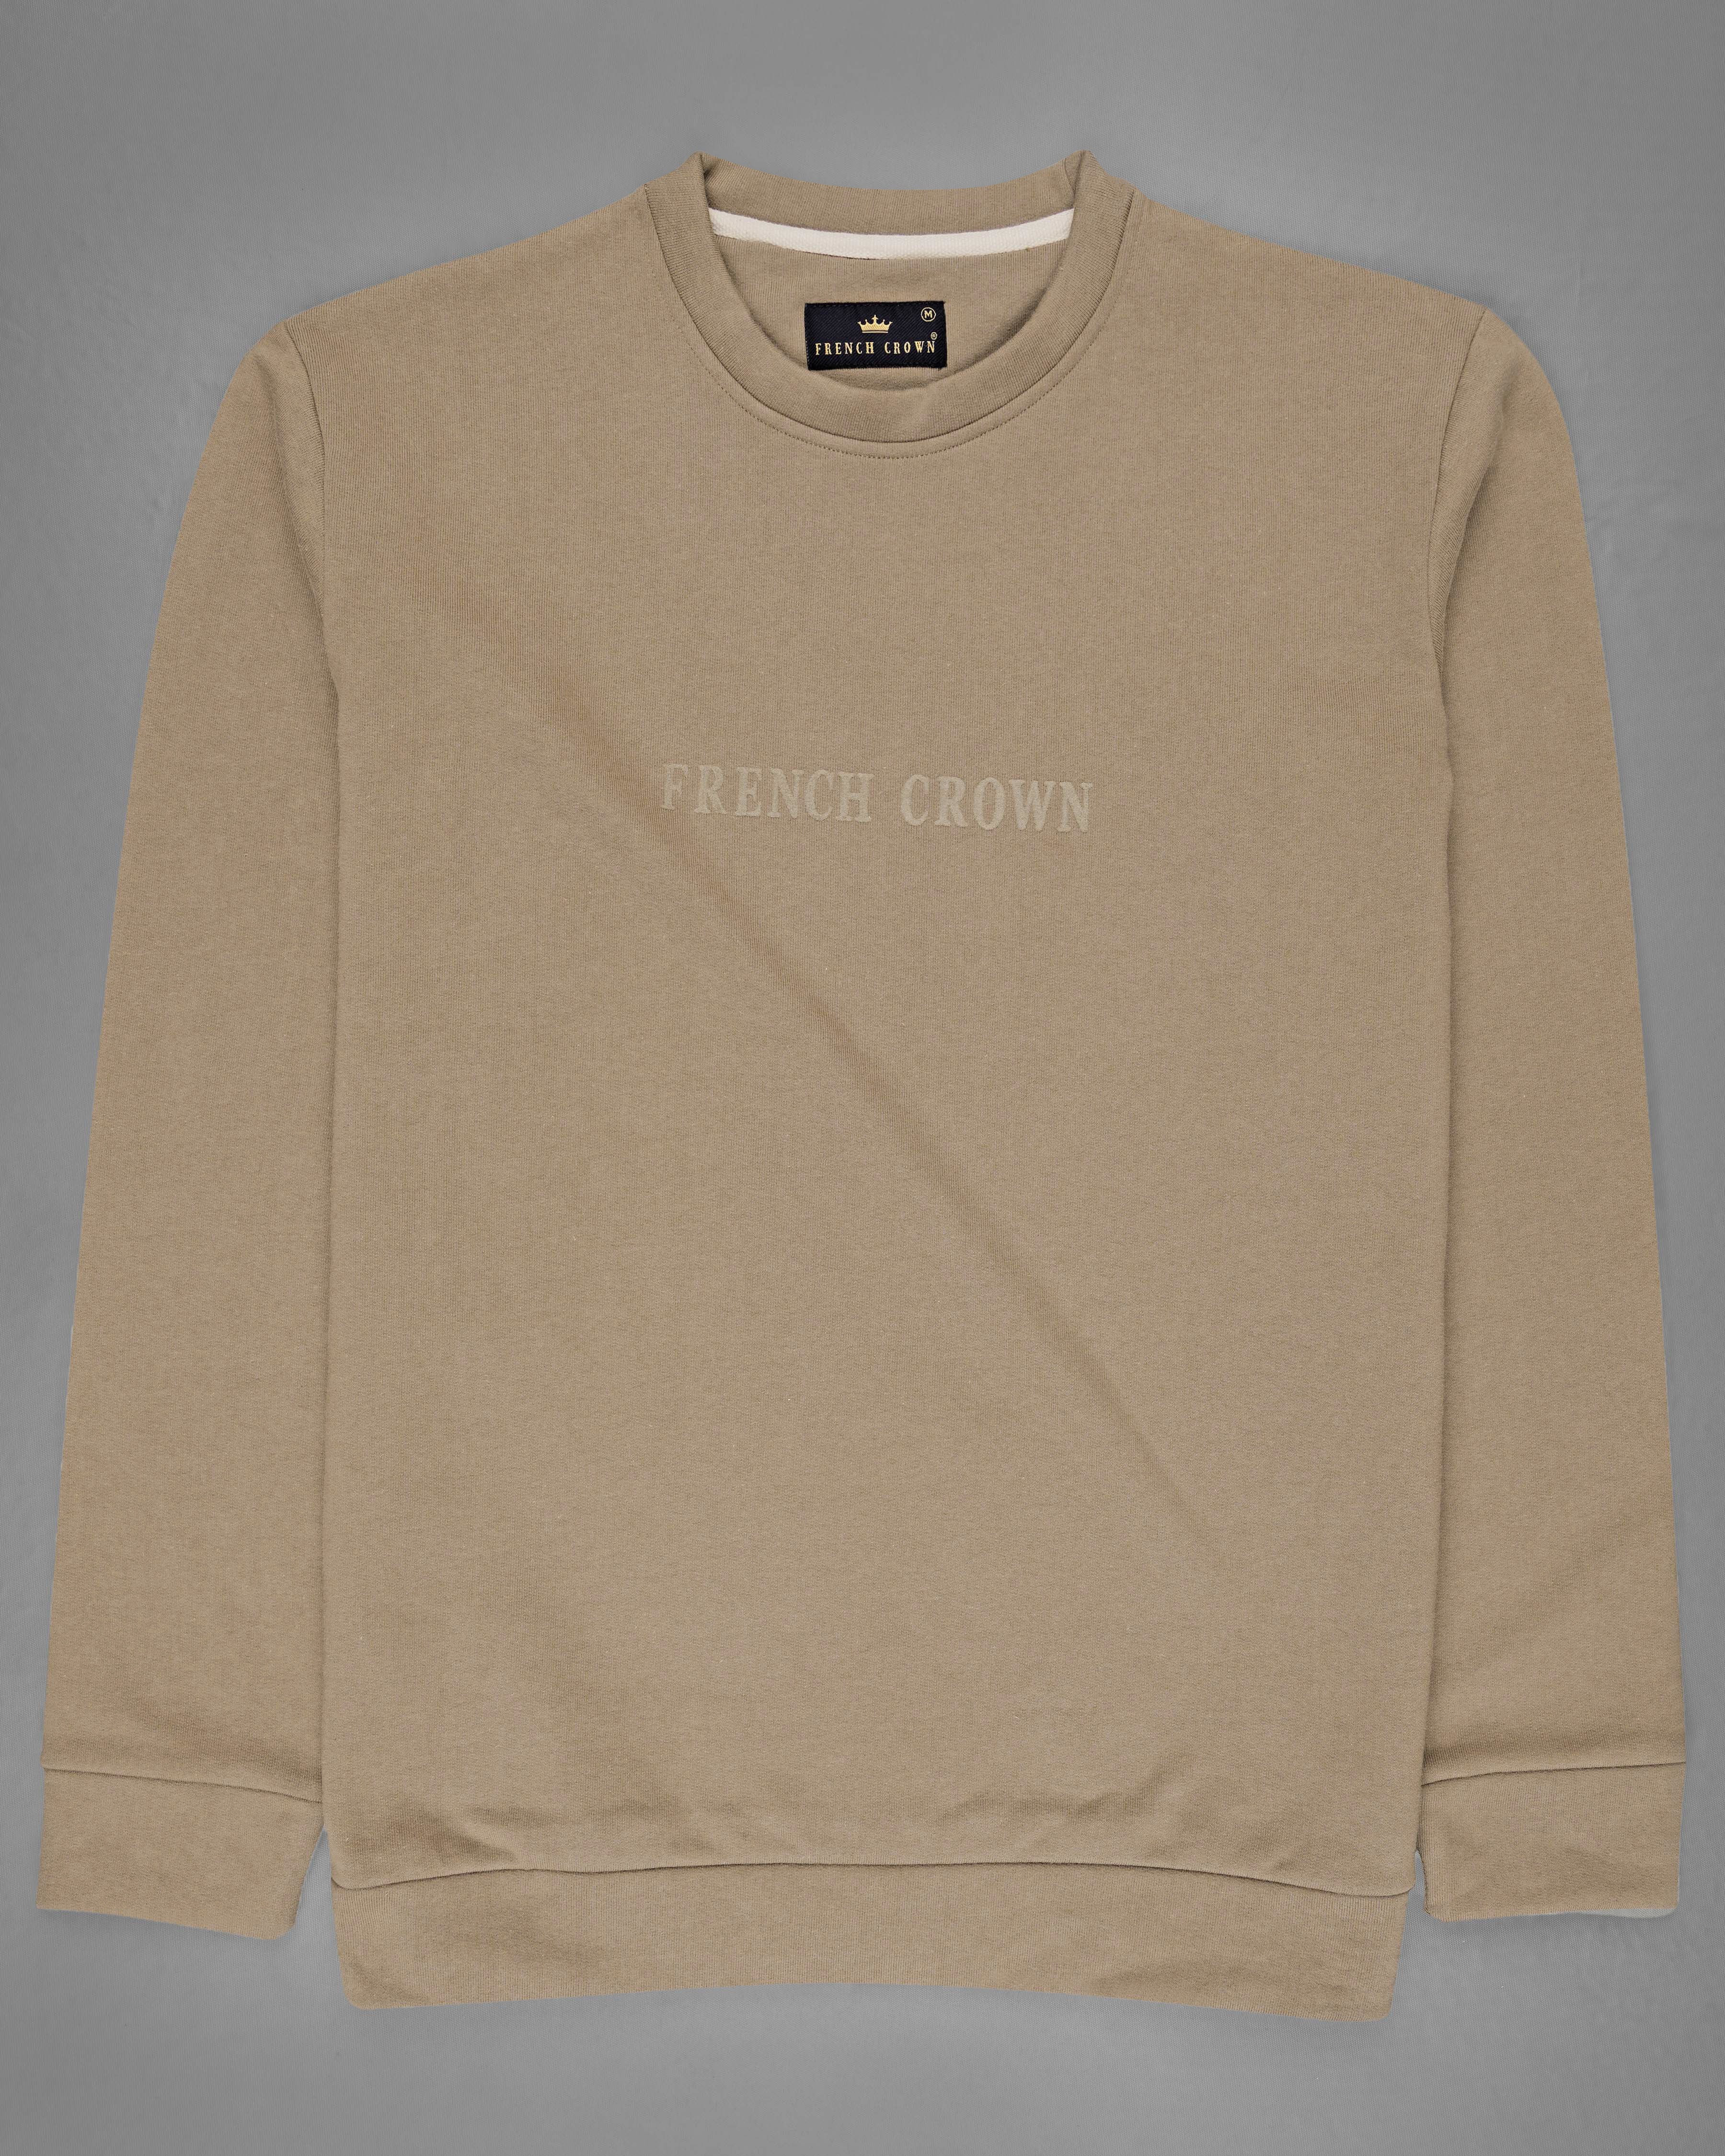 Shadow Brown Premium Cotton Sweatshirt with Shorts Combo TS616-SR173-S, TS616-SR173-M, TS616-SR173-L, TS616-SR173-XL, TS616-SR173-XXL